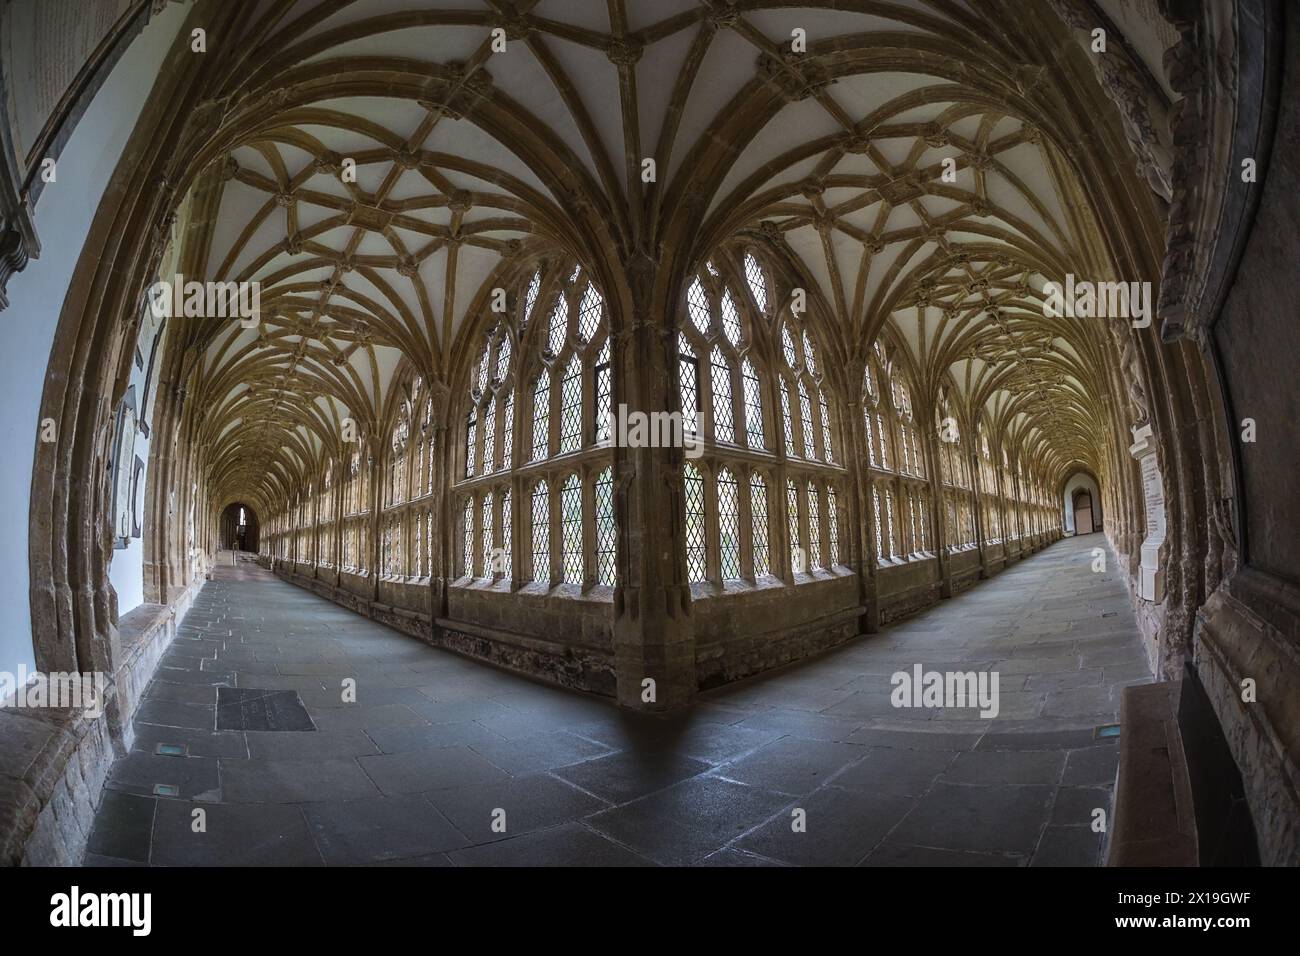 Image de lentille fisheye de l'intérieur de la cathédrale de Wells Banque D'Images